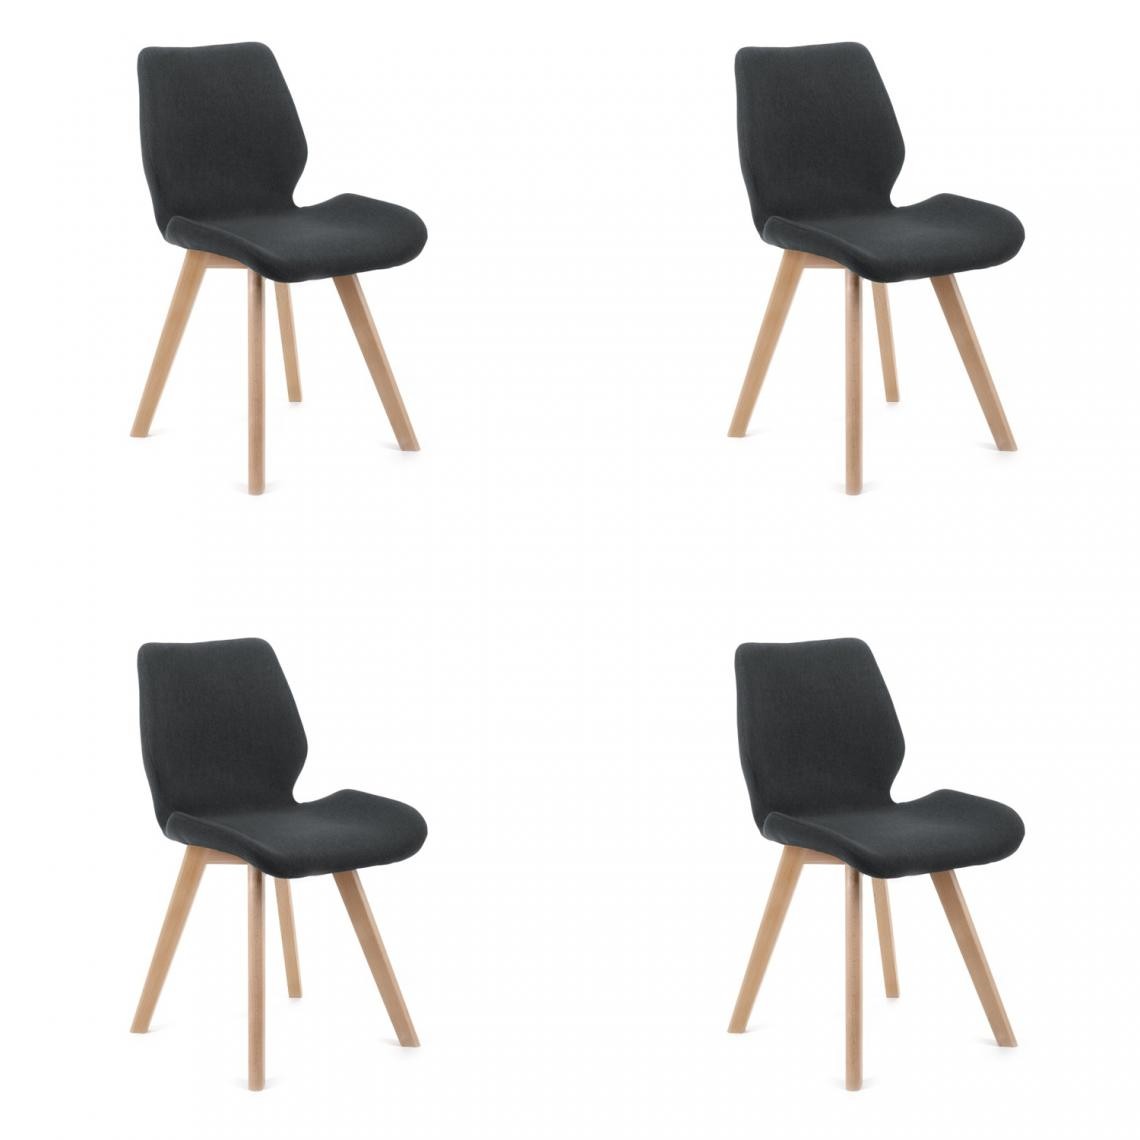 Hucoco - BROLI - Chaise rembourrée 4 pcs style moderne salon/salle à manger - 82.5x40x53 - Pieds en bois - Noir - Chaises